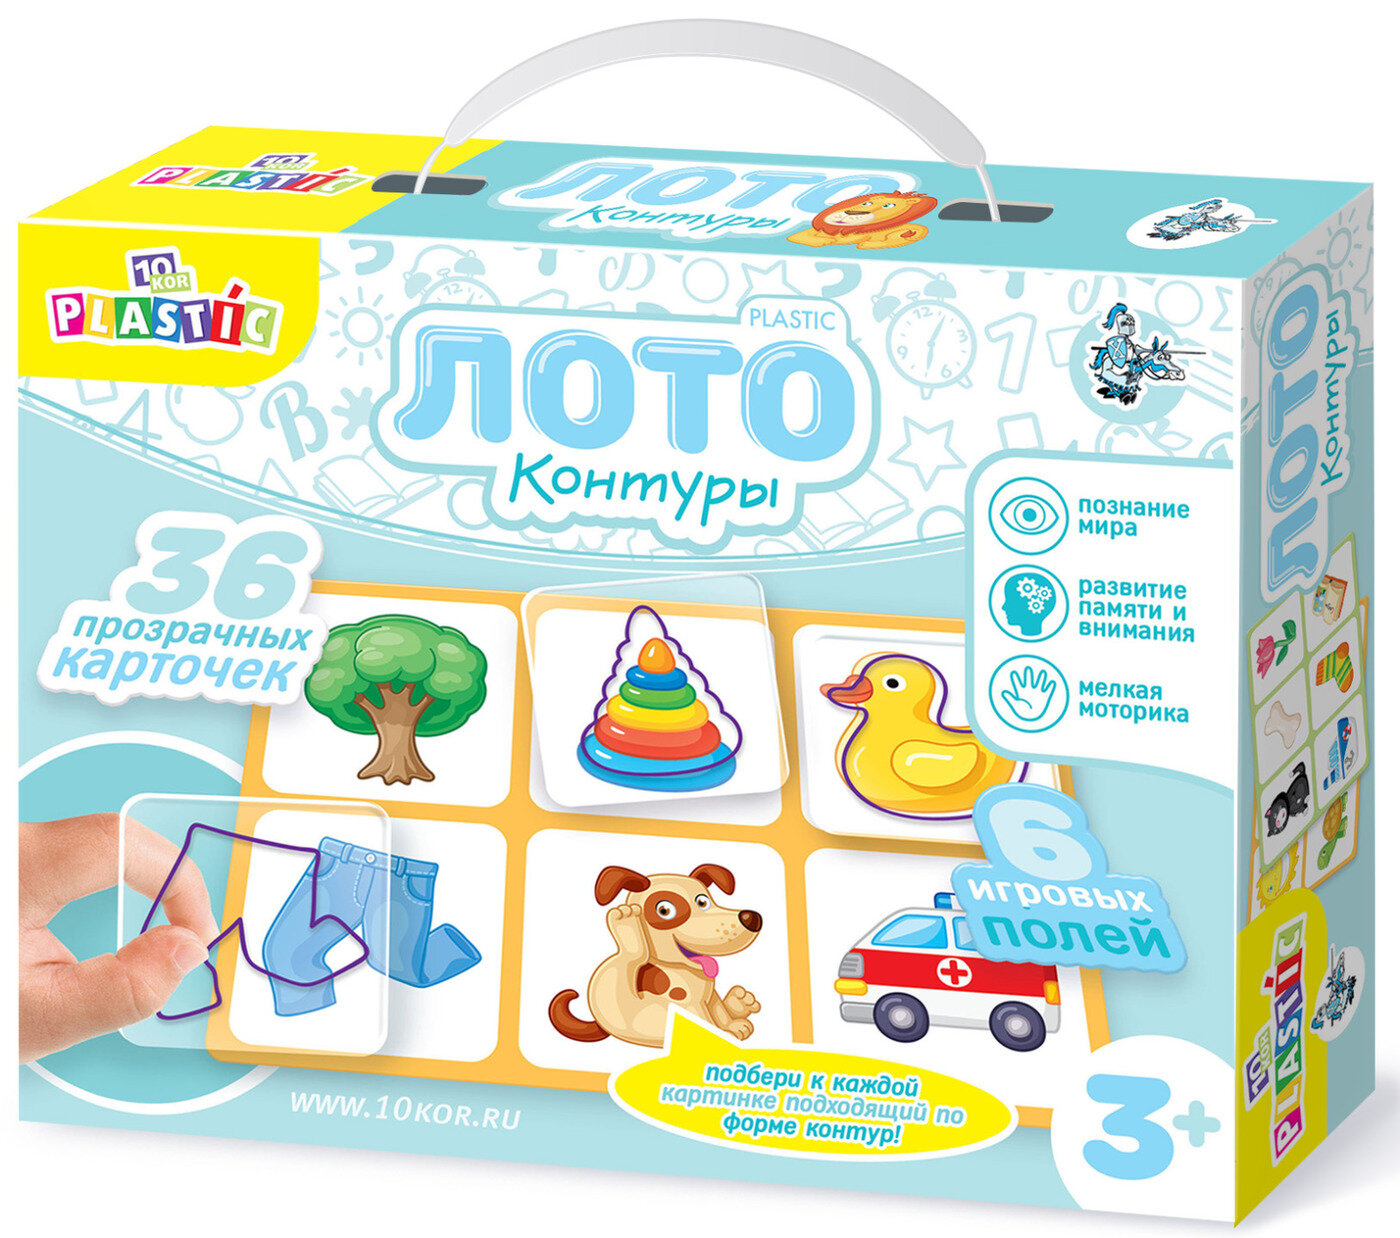 Детское пластиковое лото "Контуры", настольная развивающая игра-головоломка для детей, 36 прозрачных карточек + 6 полей